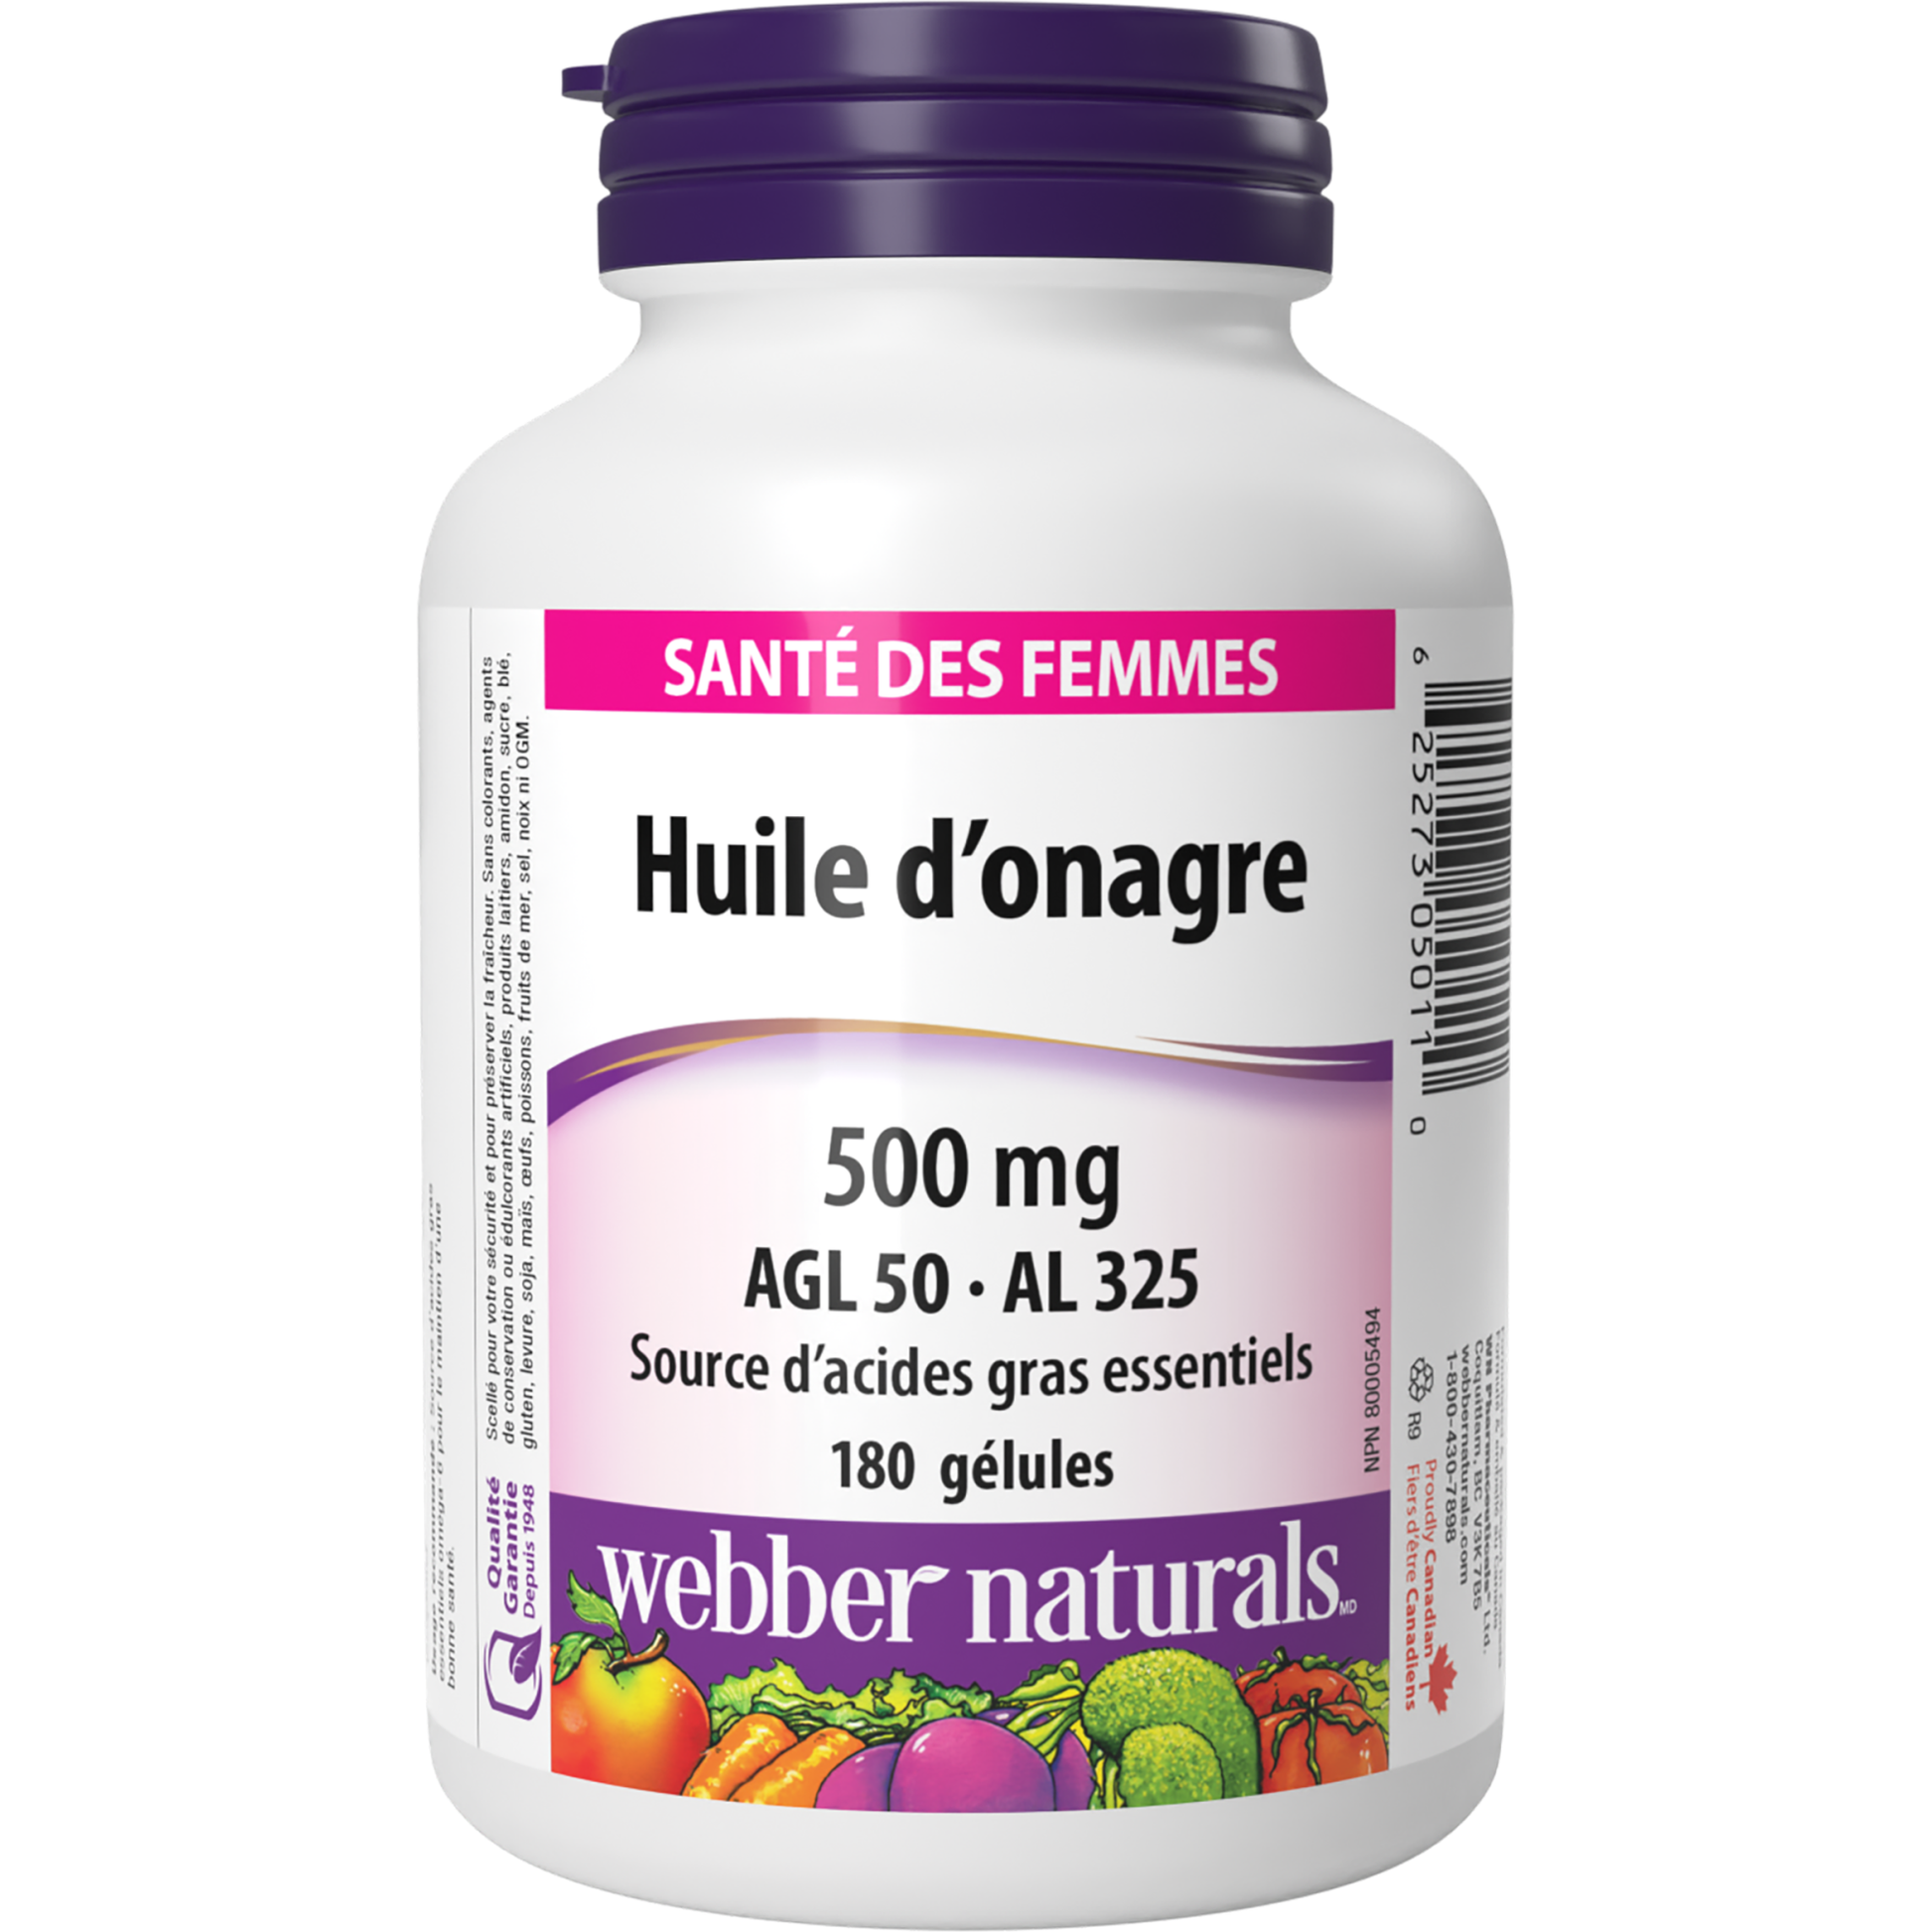 Huile d’onagre AGL 50 · AL 325 500 mg for Webber Naturals|v|hi-res|WN5011